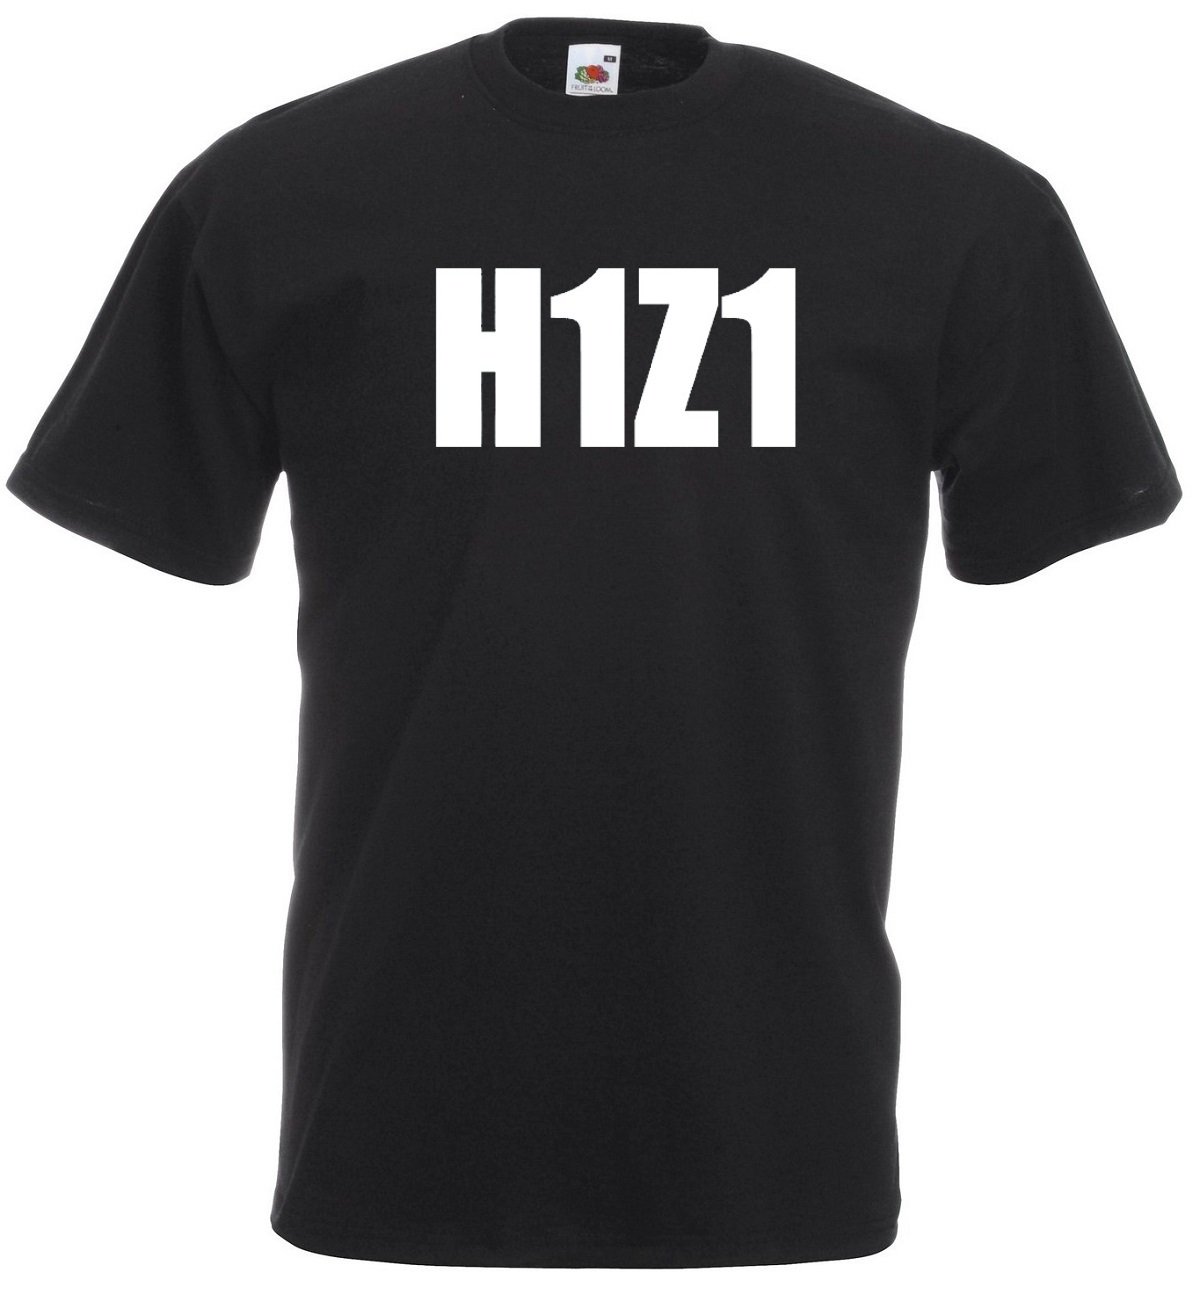 h1z1 shirt